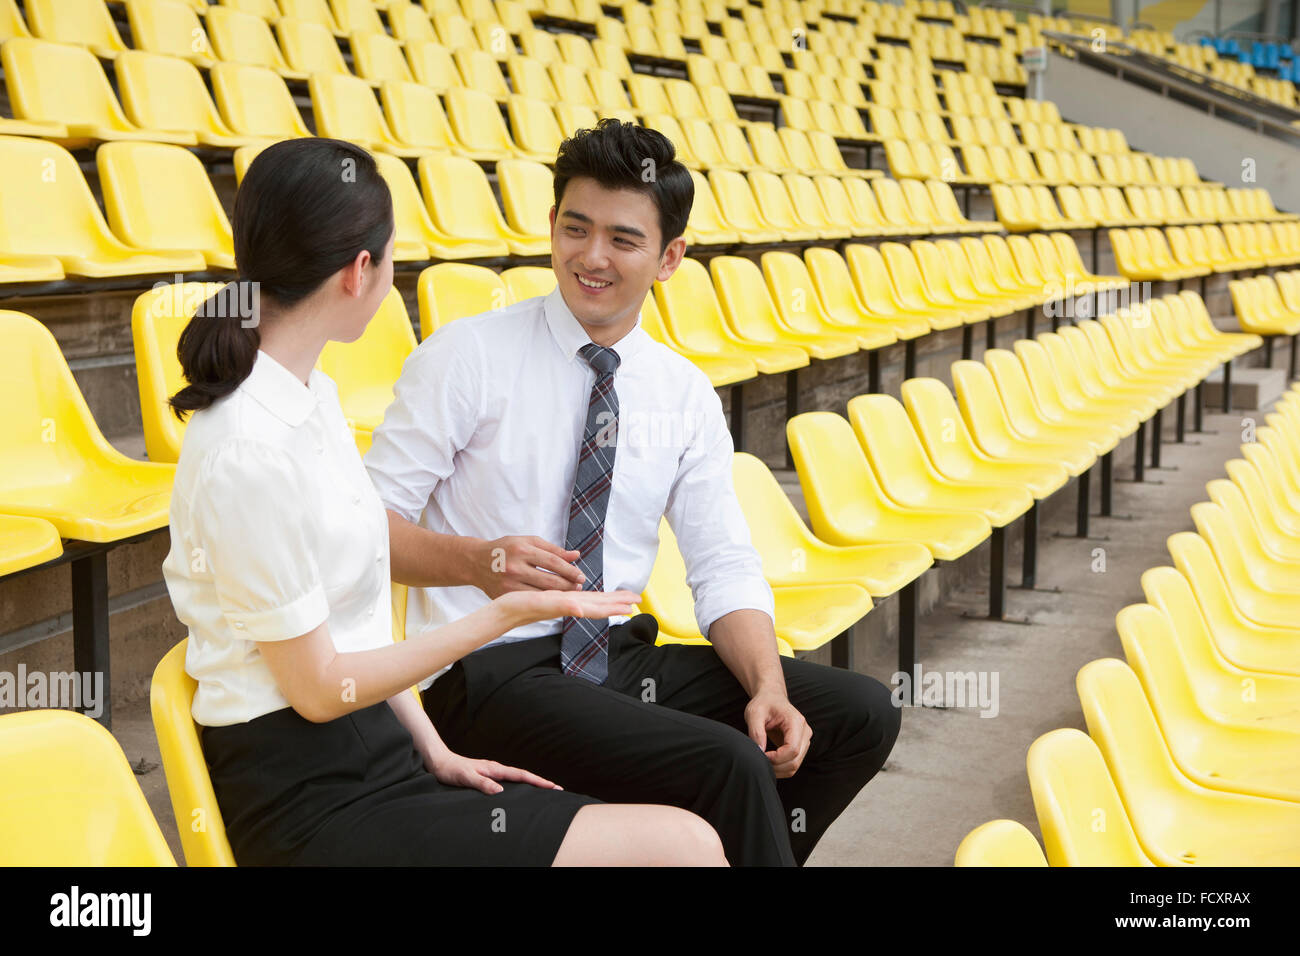 Lächelnder Mann und Frau in Anzügen auf Stadionsitze sitzen und reden von Angesicht zu Angesicht Stockfoto